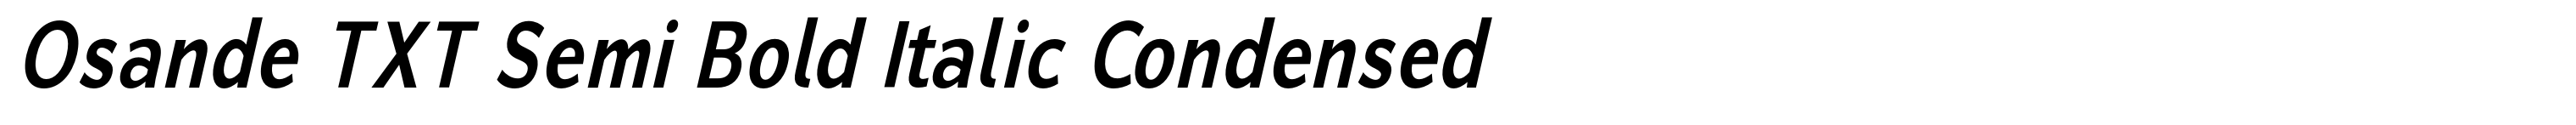 Osande TXT Semi Bold Italic Condensed